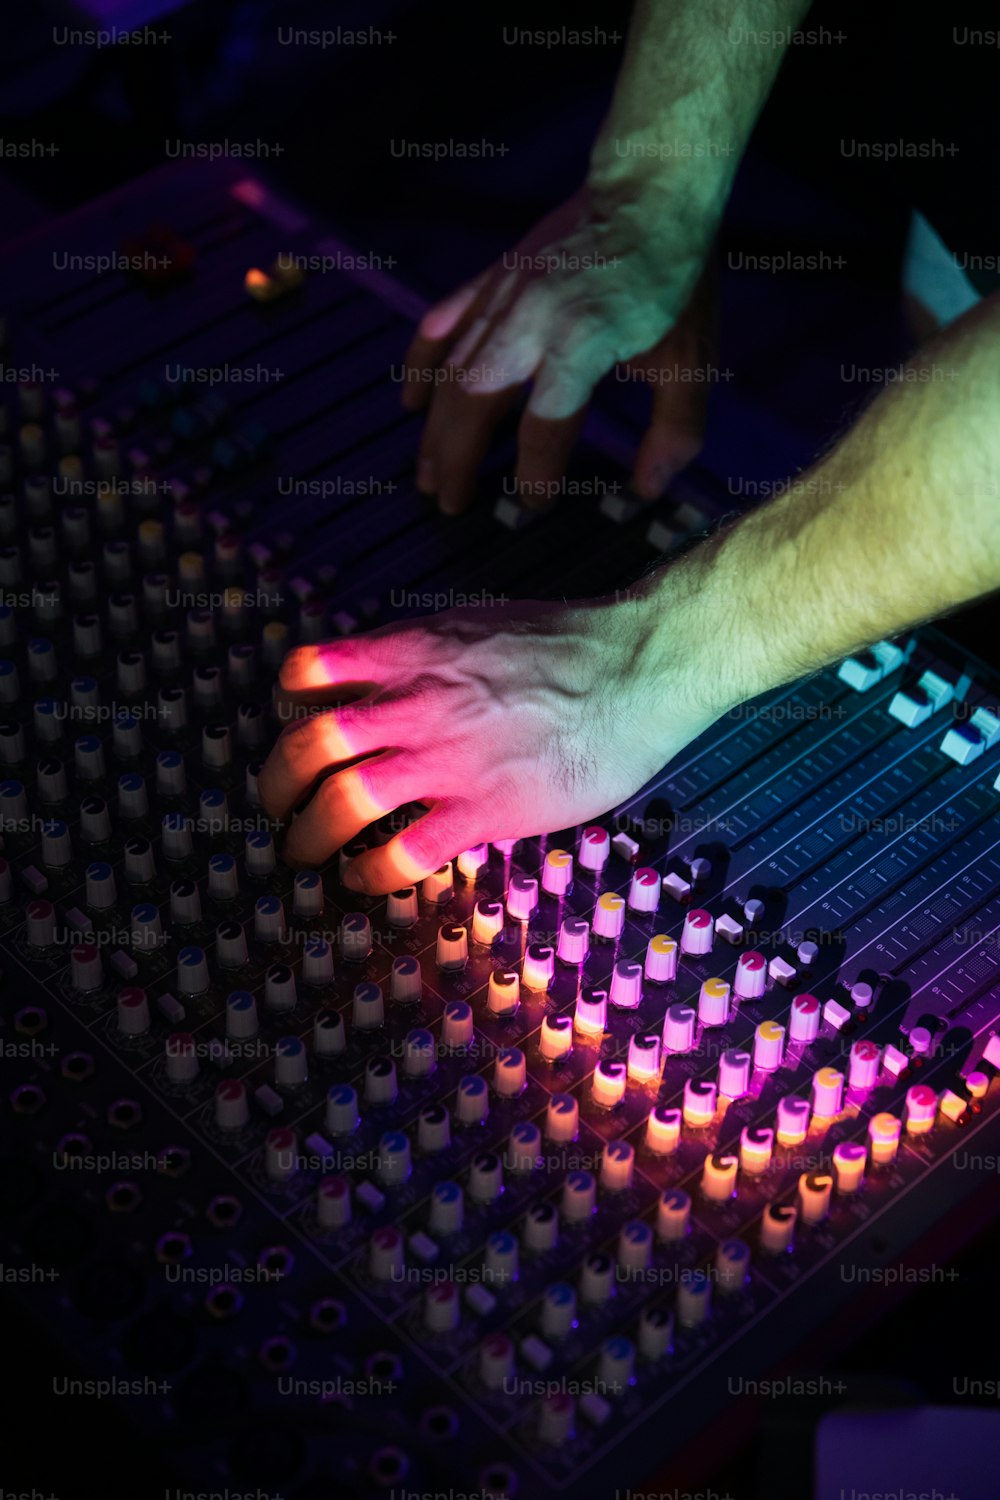 a person using a sound board in a dark room